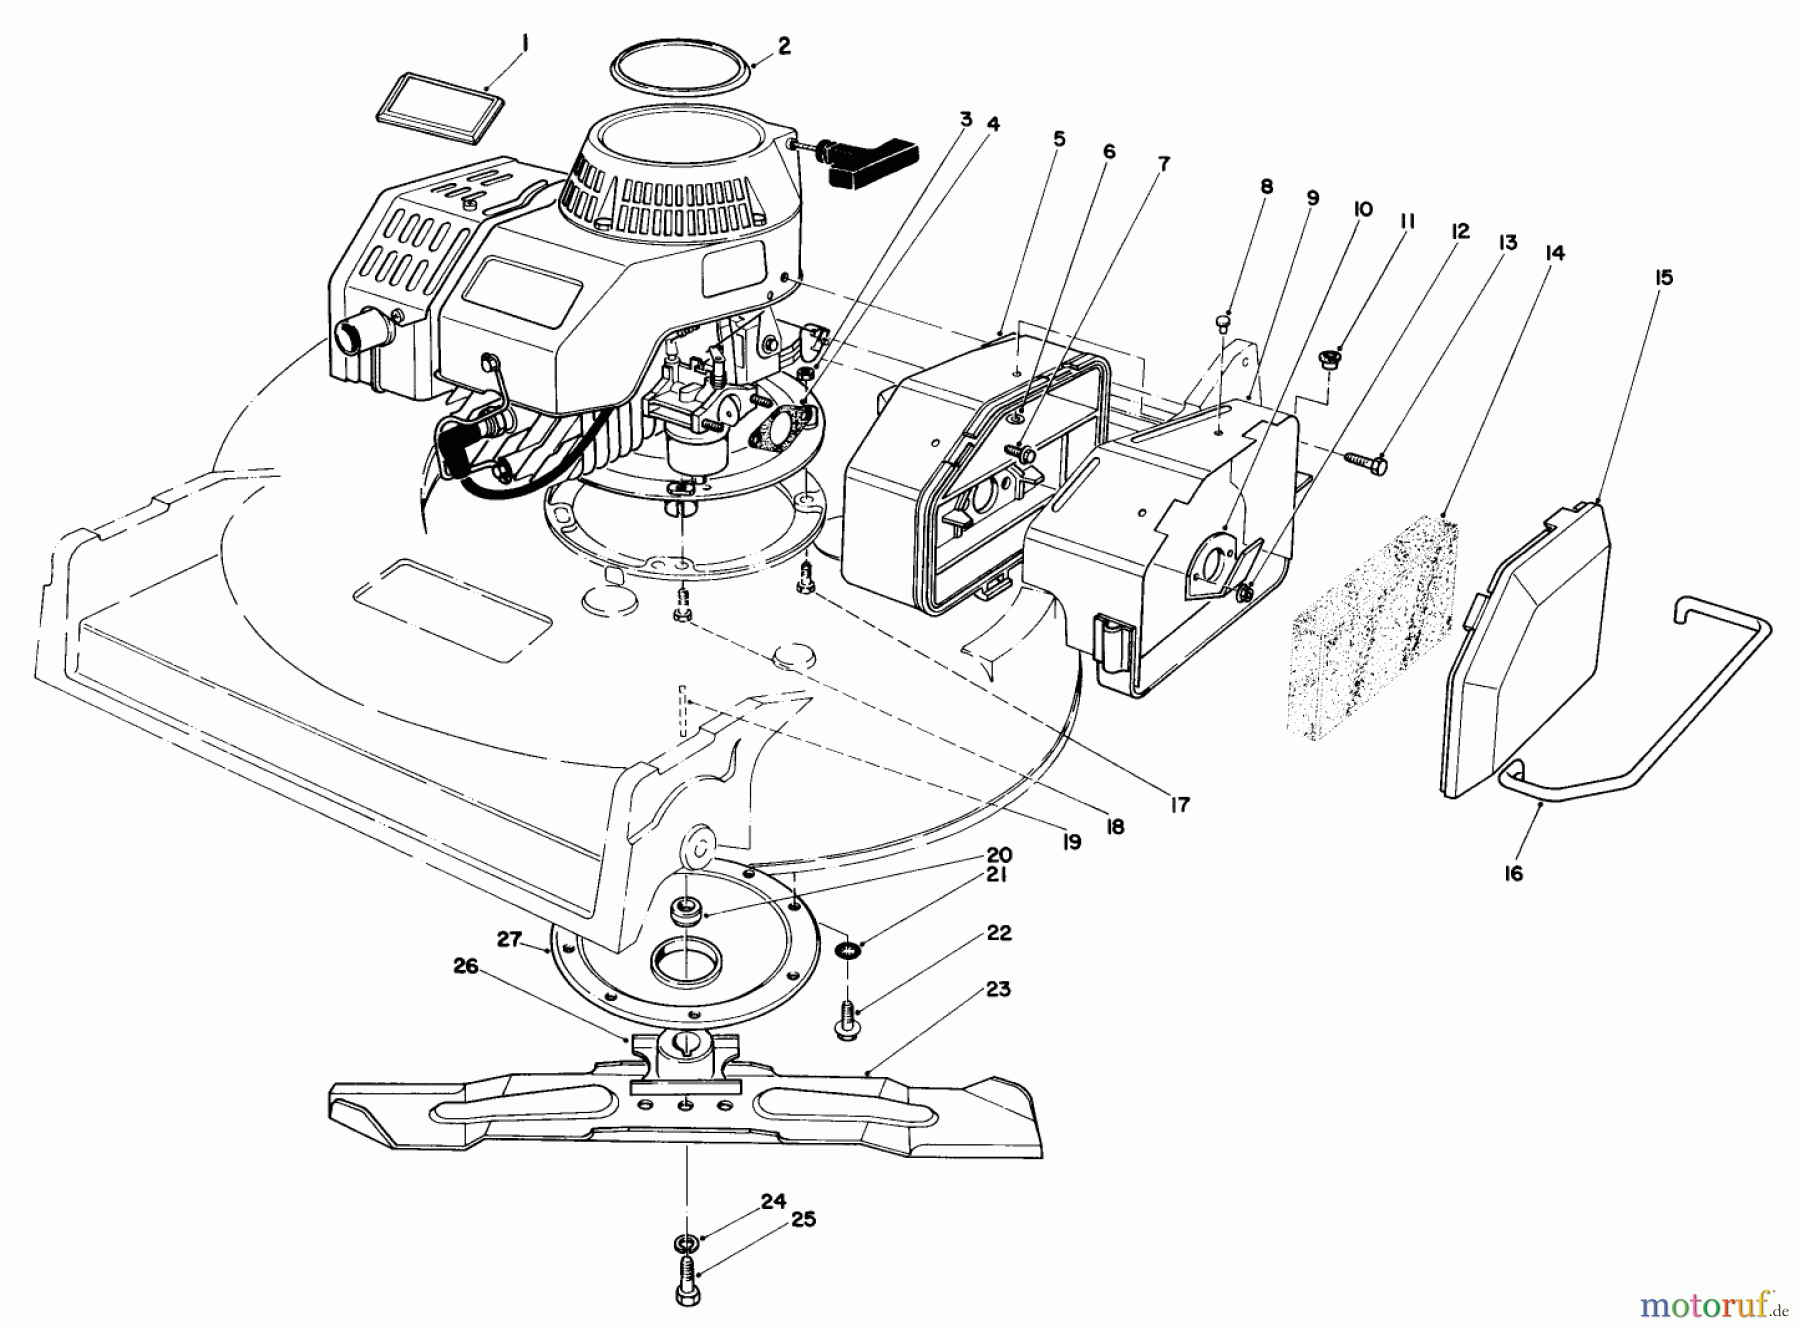  Toro Neu Mowers, Walk-Behind Seite 2 22030 - Toro Lawnmower, 1984 (4000001-4999999) ENGINE ASSEMBLY (MODEL 22030)